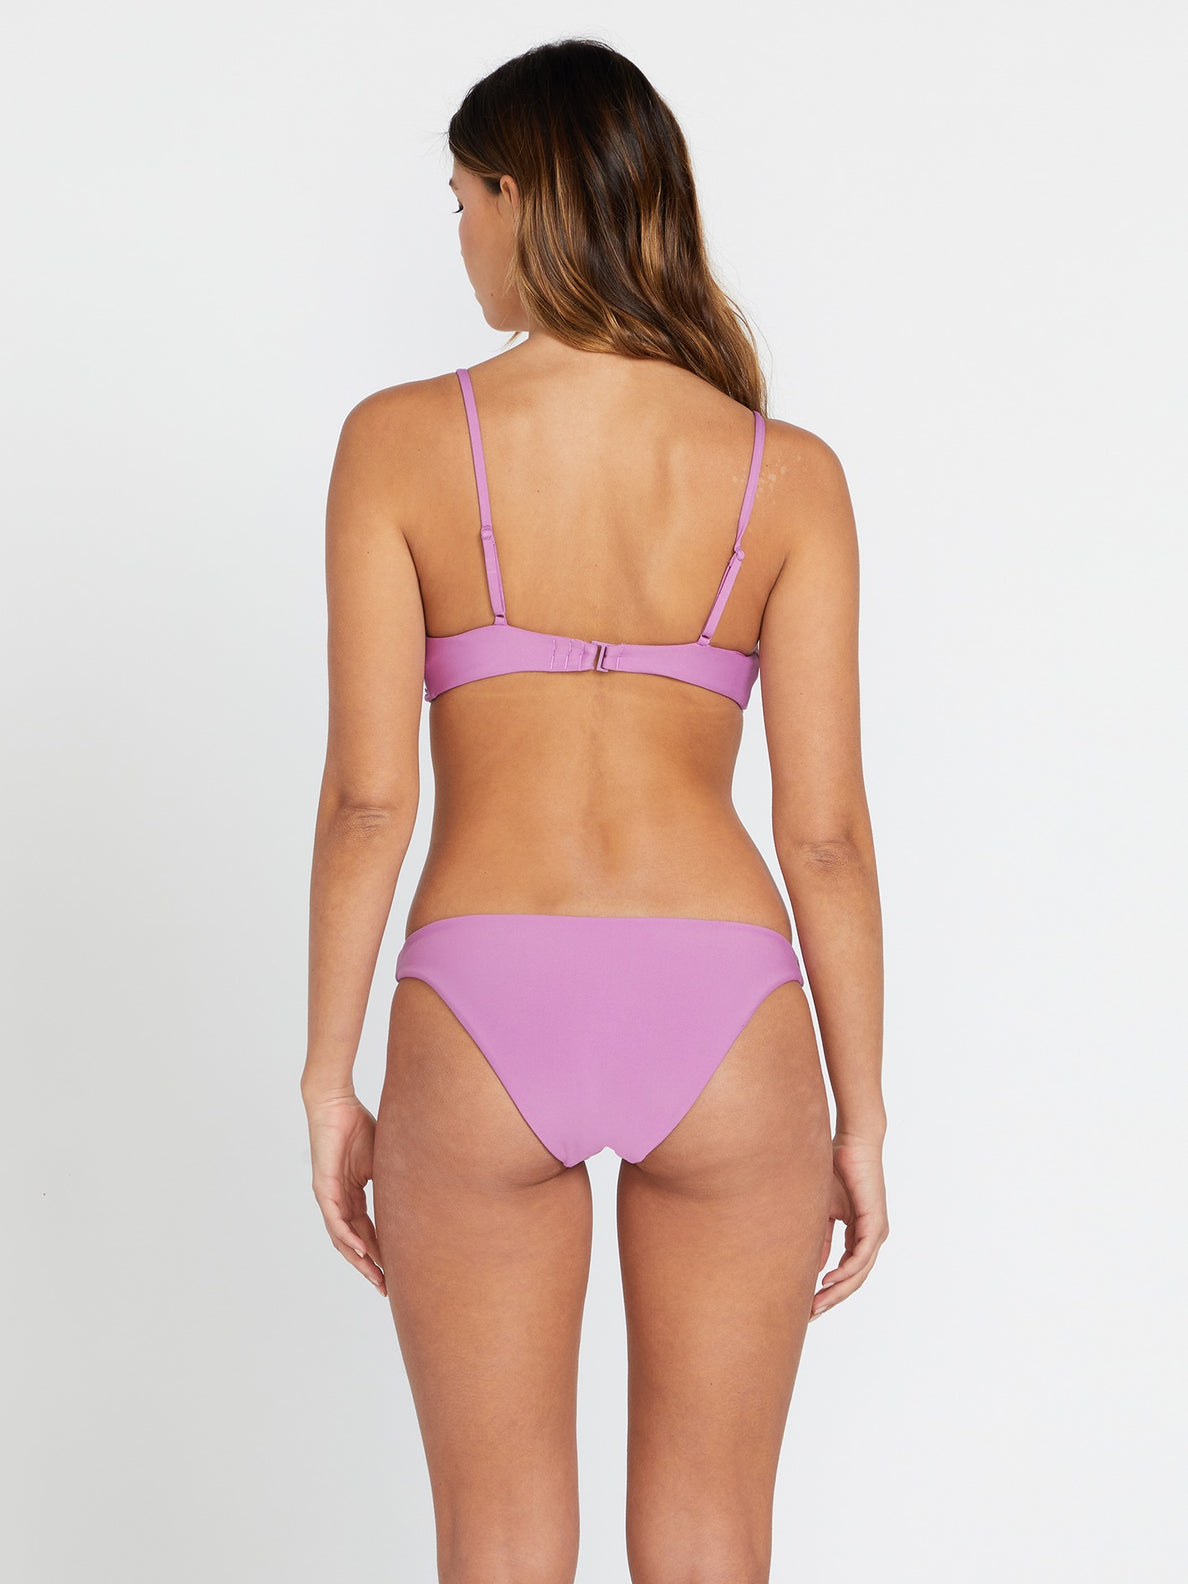 Simply Seamless Skimpy Bikini Bottom - Iris Purple